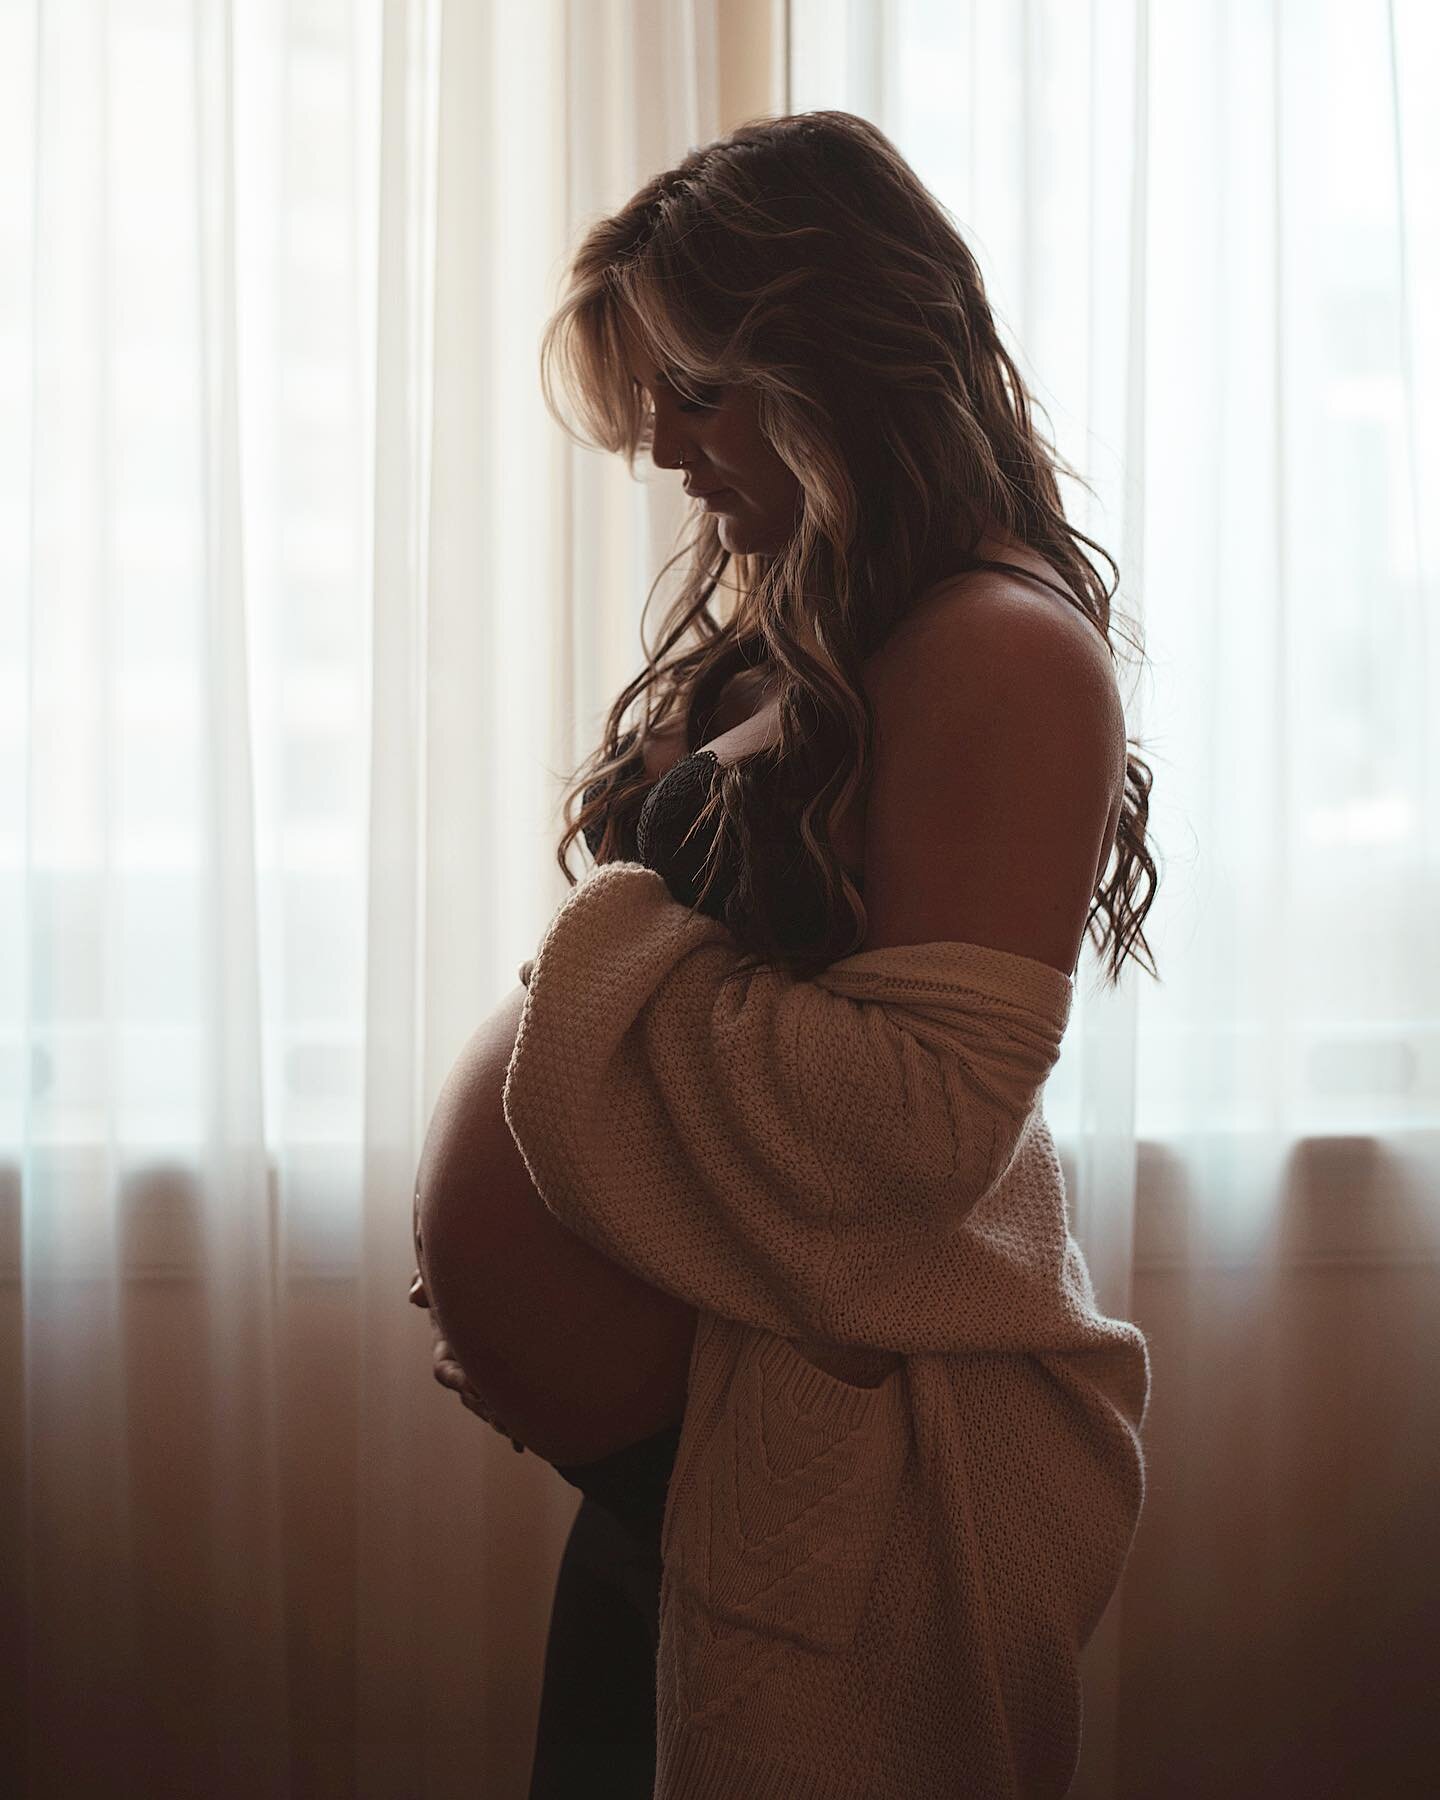 💗 @kattlallier 

#maternityphotography #maternityphotoshoot #maternityshoot #pregnant #maternitypictures #maternity #ymmphotographer #fortmcmurrayphotographer